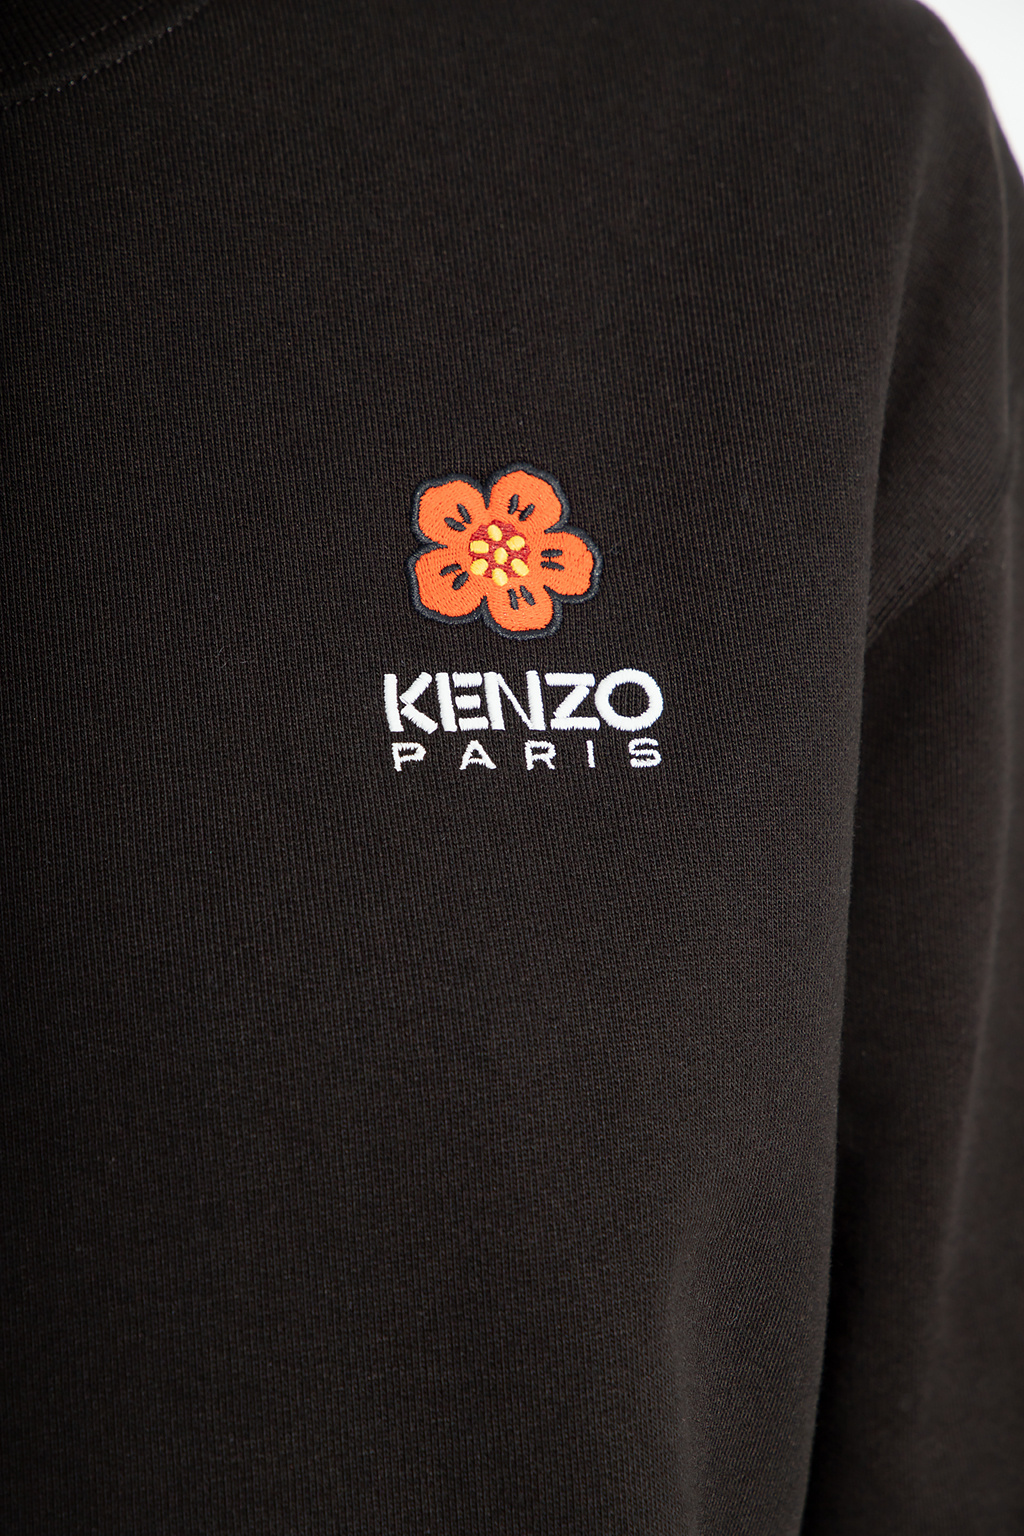 Kenzo T-shirt Zone3 Power Burst XRC cinzento amarelo lima